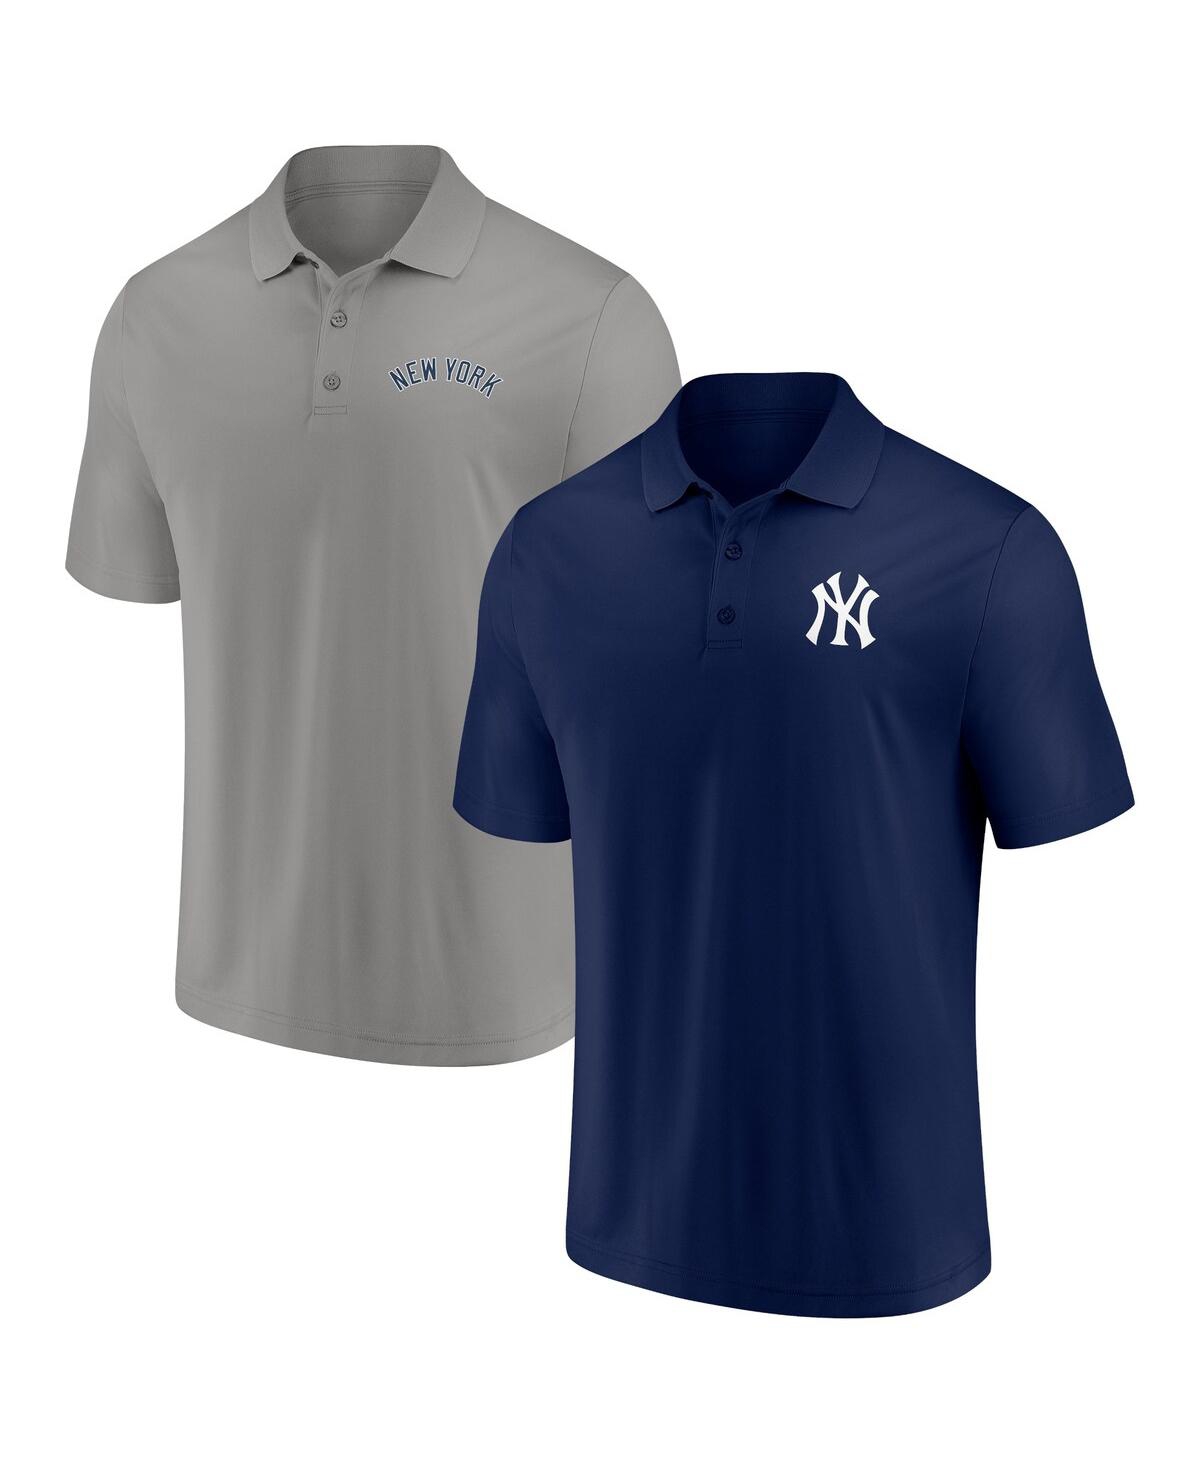 Fanatics Men's  Navy, Gray New York Yankees Dueling Logos Polo Shirt Combo Set In Navy,gray